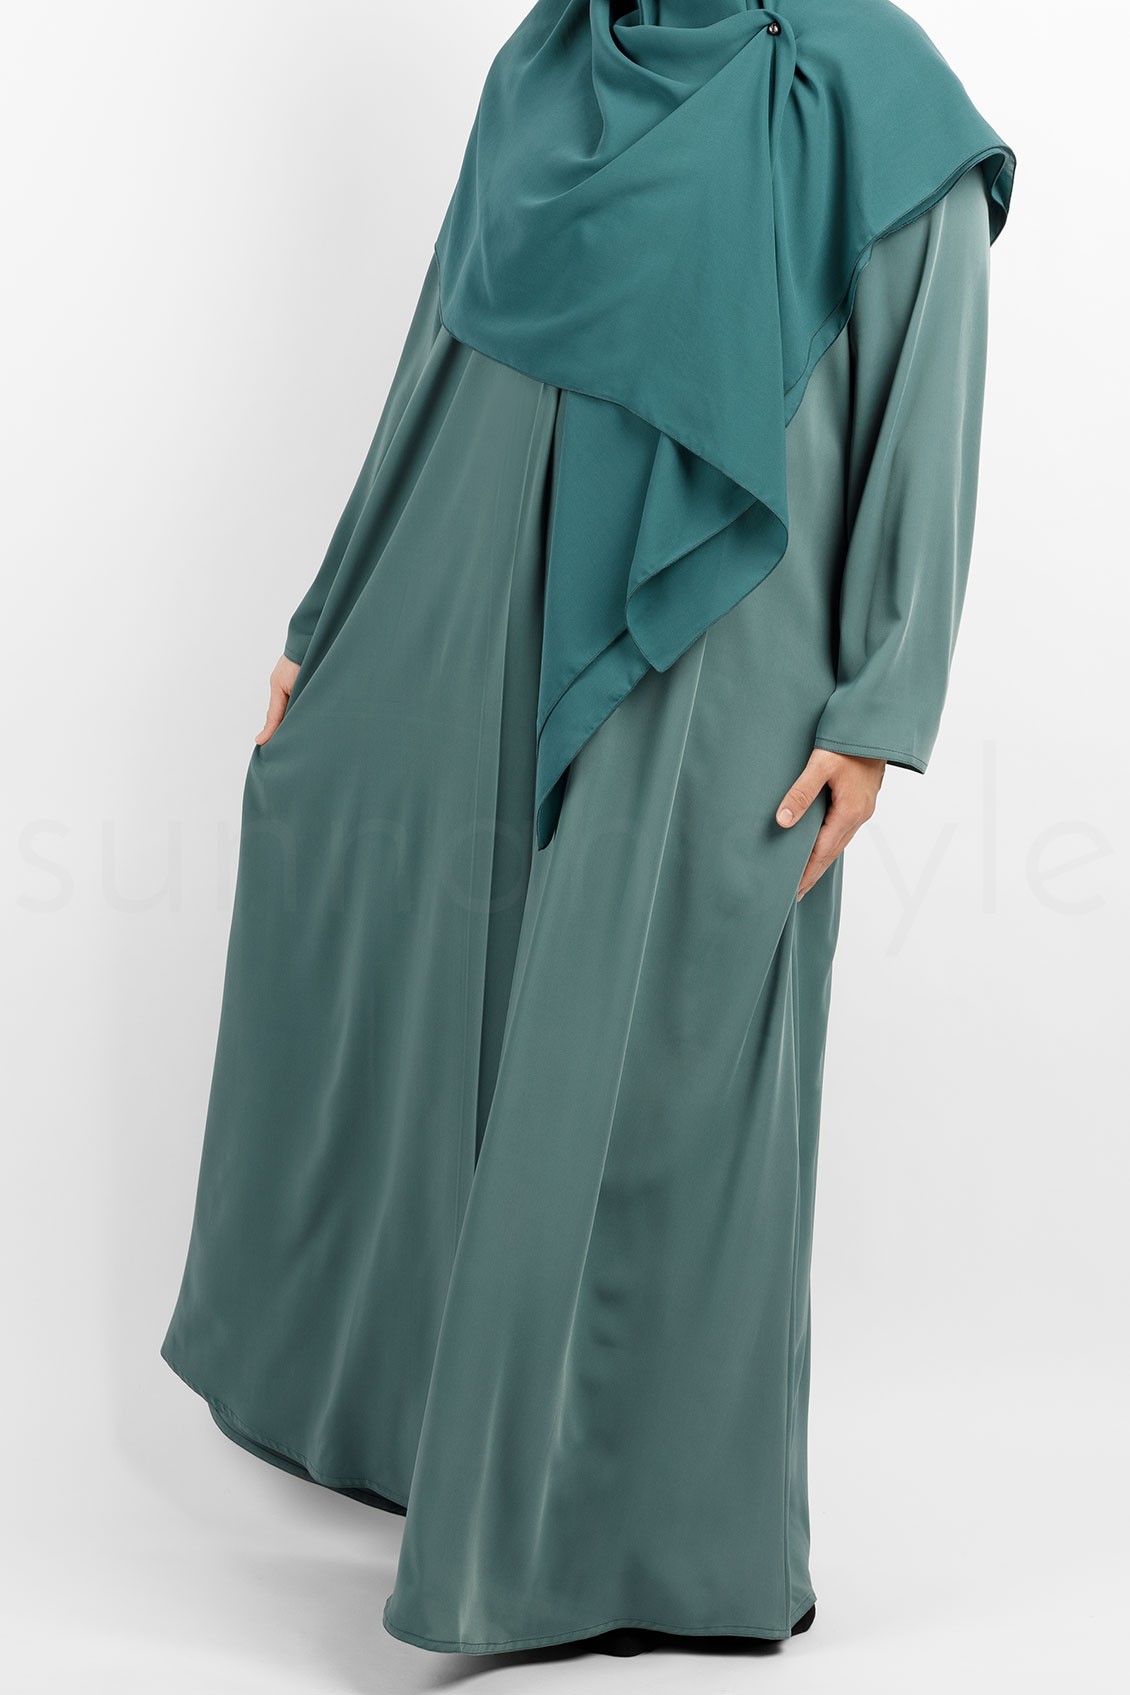 Sunnah Style Flare Abaya Spearmint